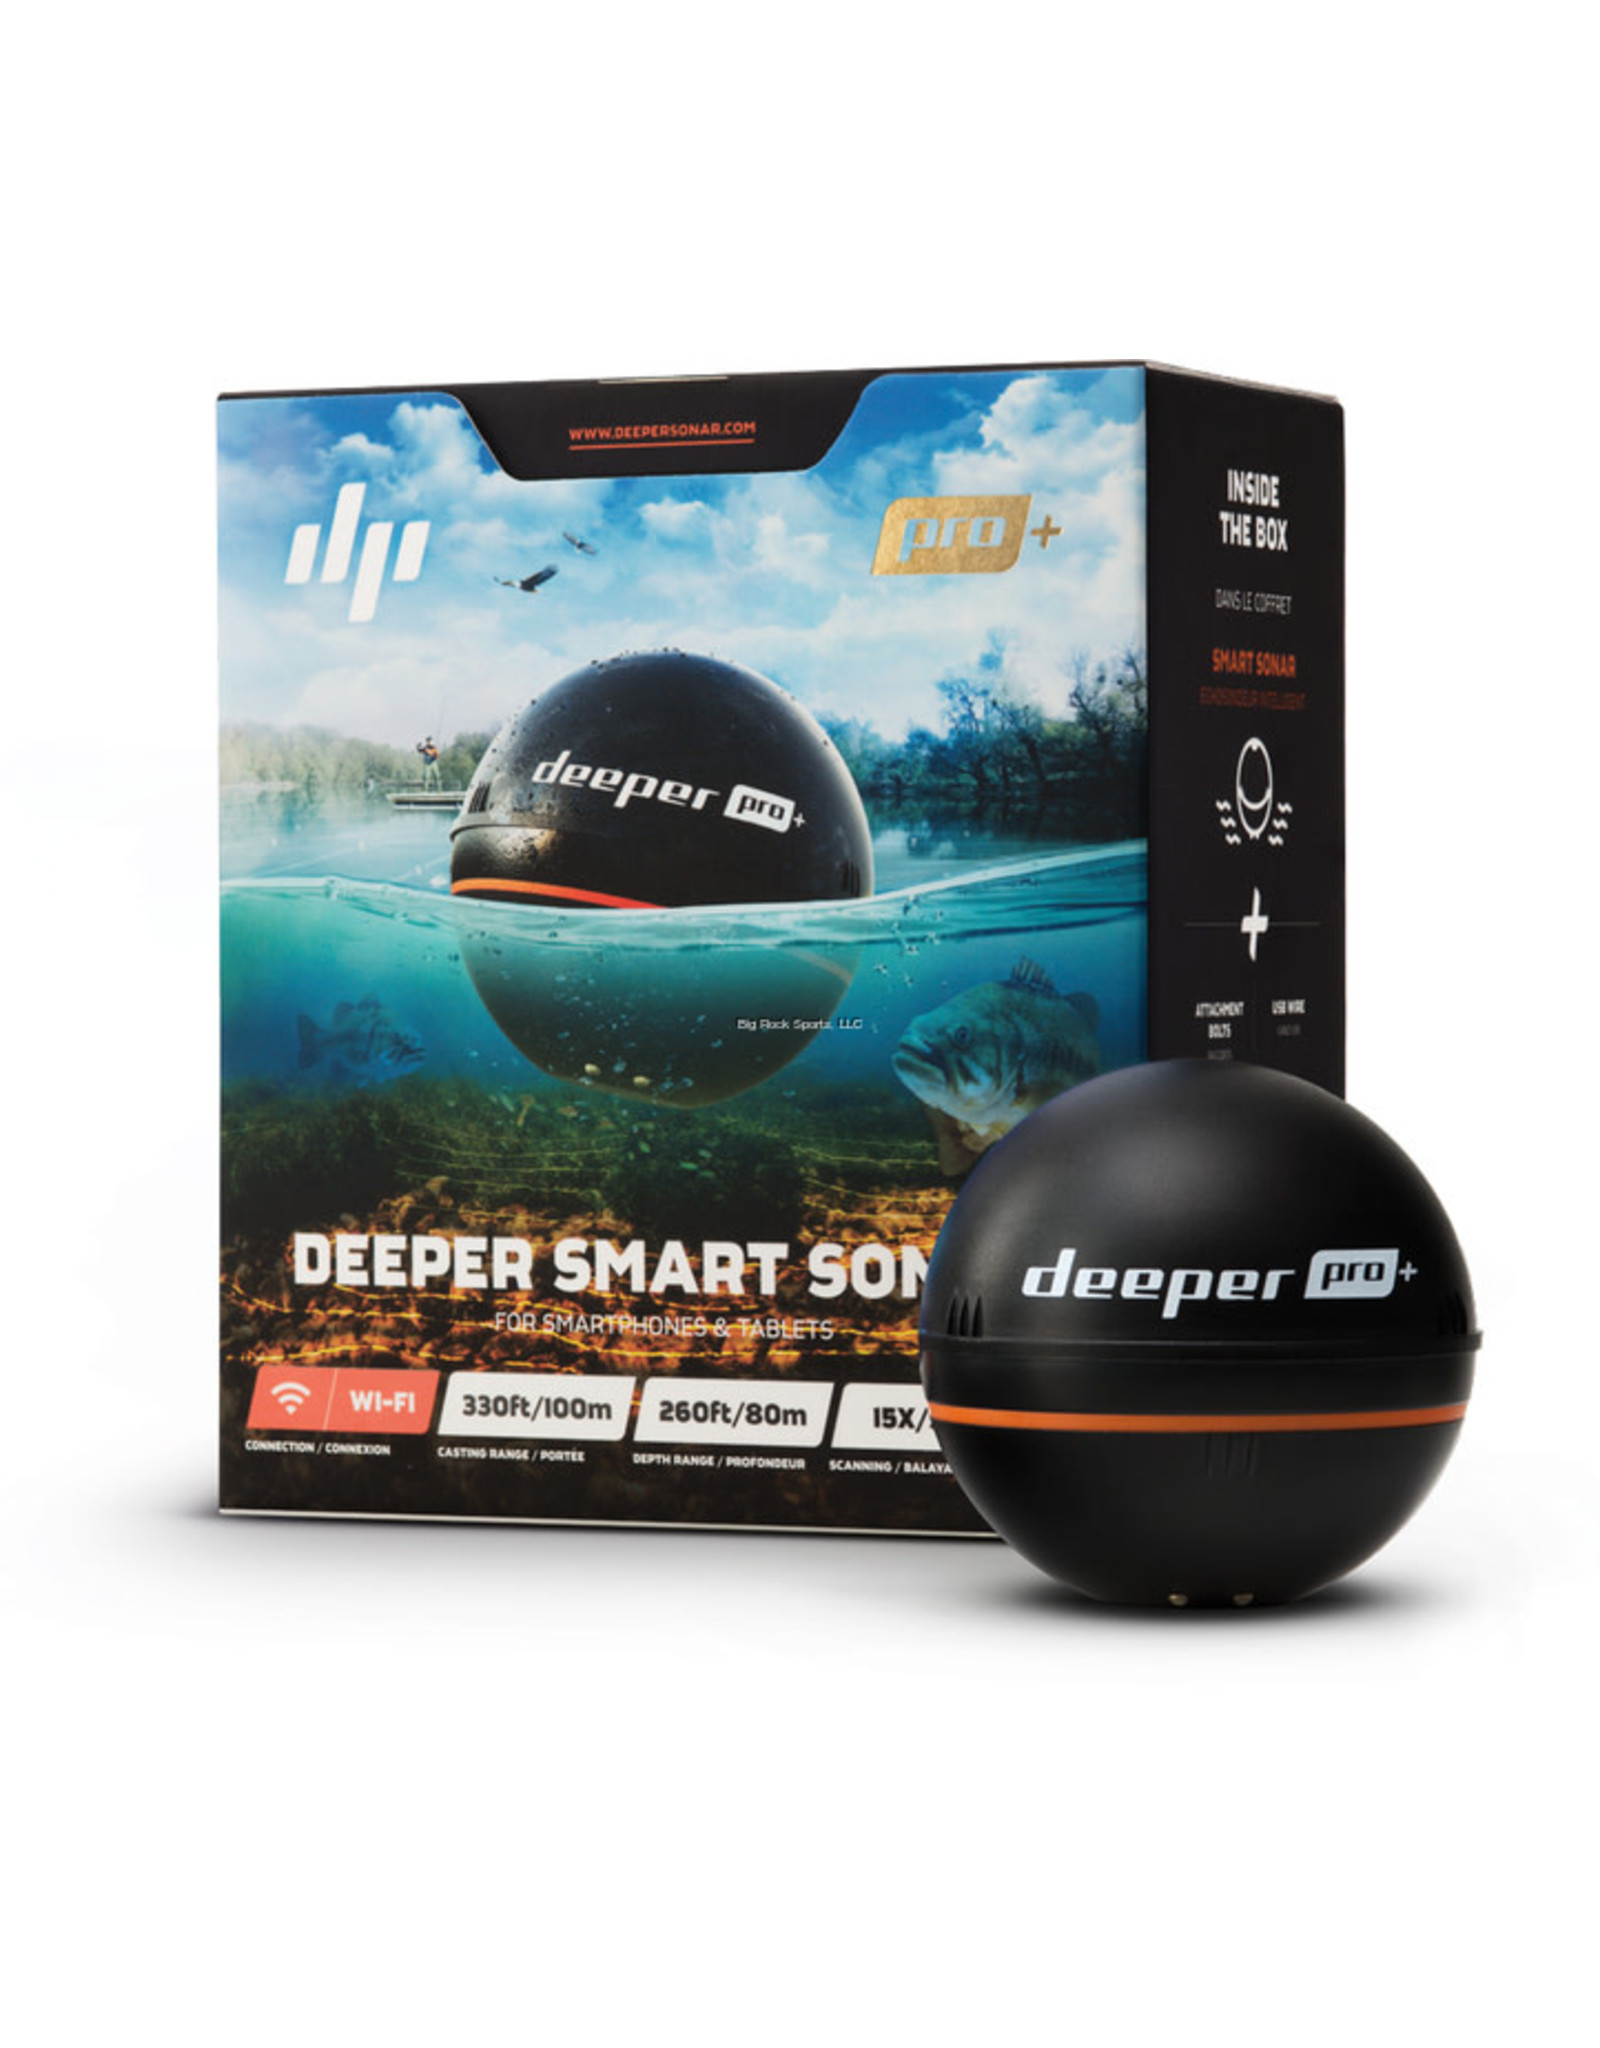 Deeper pro купить. Эхолот Deeper Smart Sonar Pro+2. Эхолот Deeper Smart Sonar Pro. Deeper Smart Sonar Pro+. Беспроводной эхолот Deeper Sonar Pro Plus.